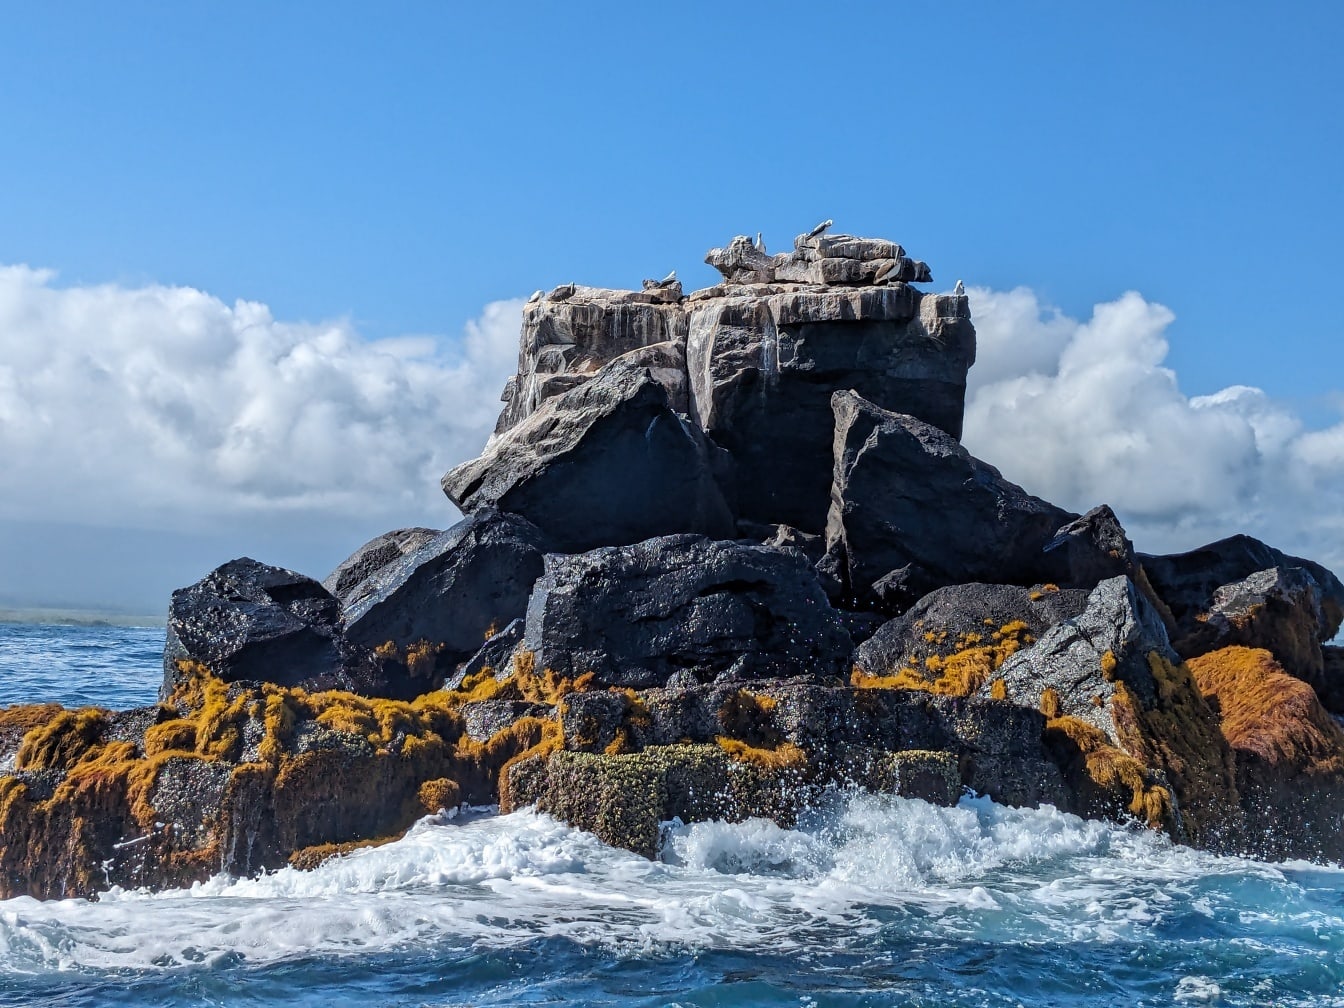 Βραχώδης σχηματισμός που εκτοξεύεται από τα κύματα του Ειρηνικού ωκεανού στο φυσικό πάρκο στο νησί Γκαλαπάγκος